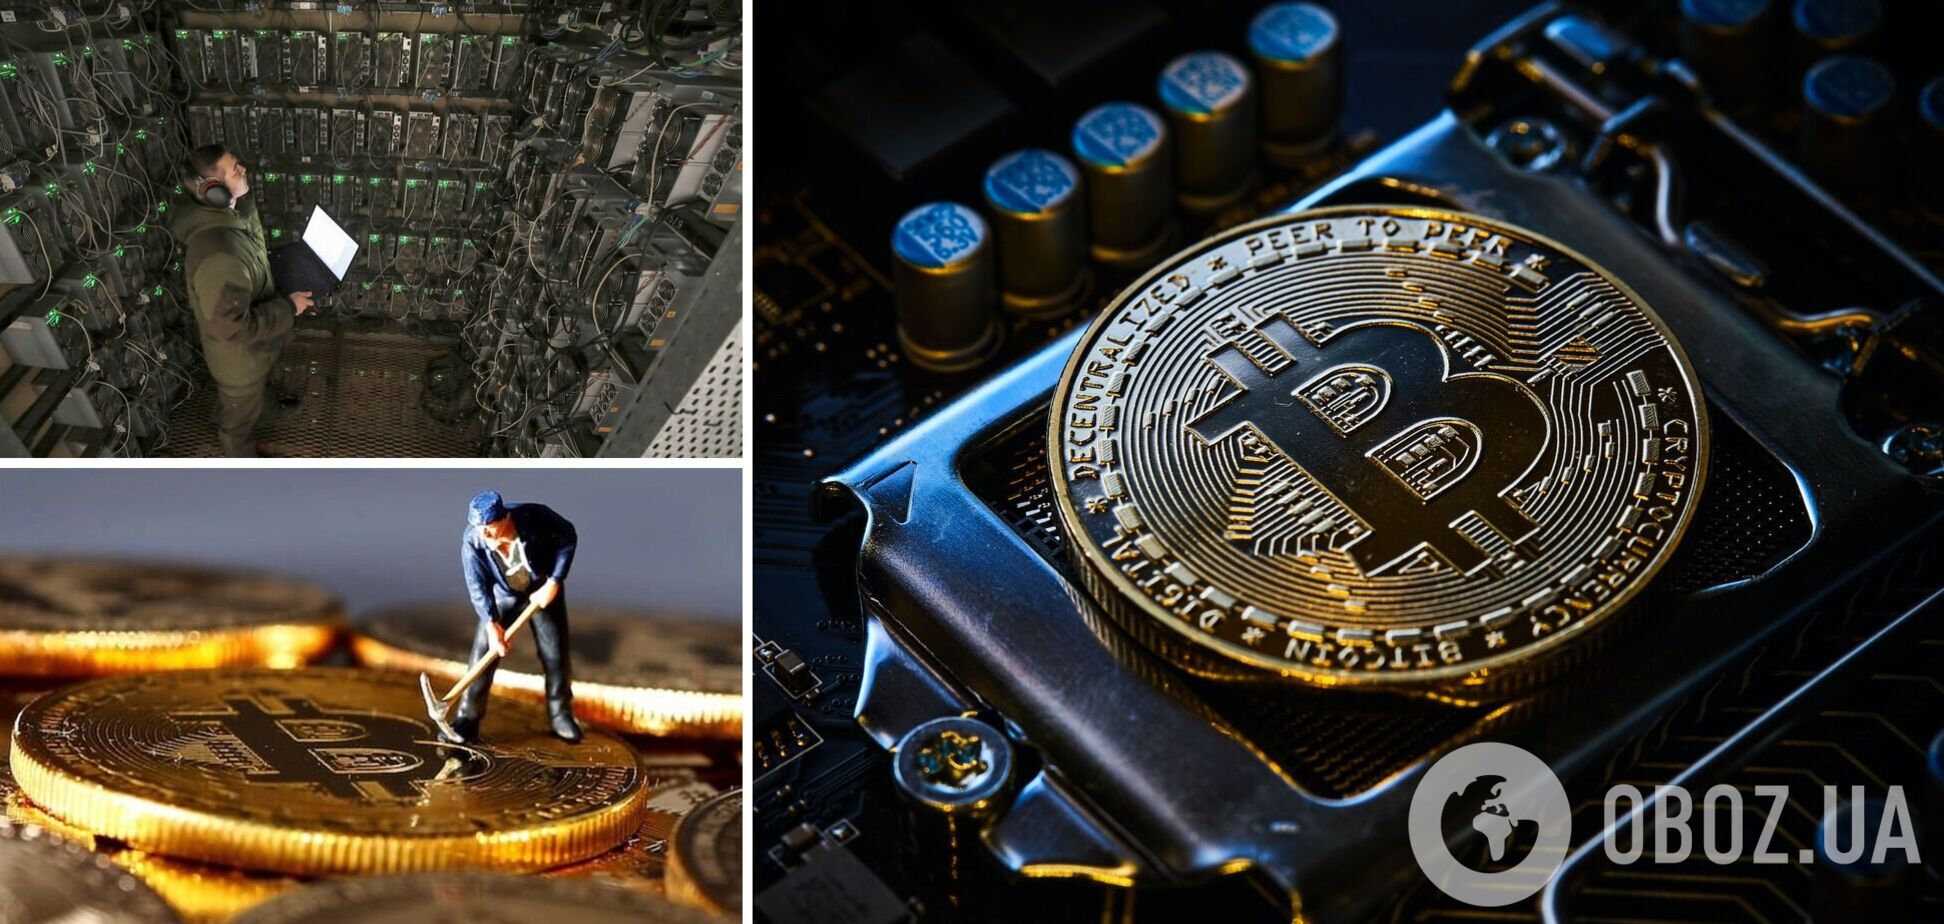 Майнер-одиночка добыл блок в блокчейне Bitcoin и получил более $170 тысяч 